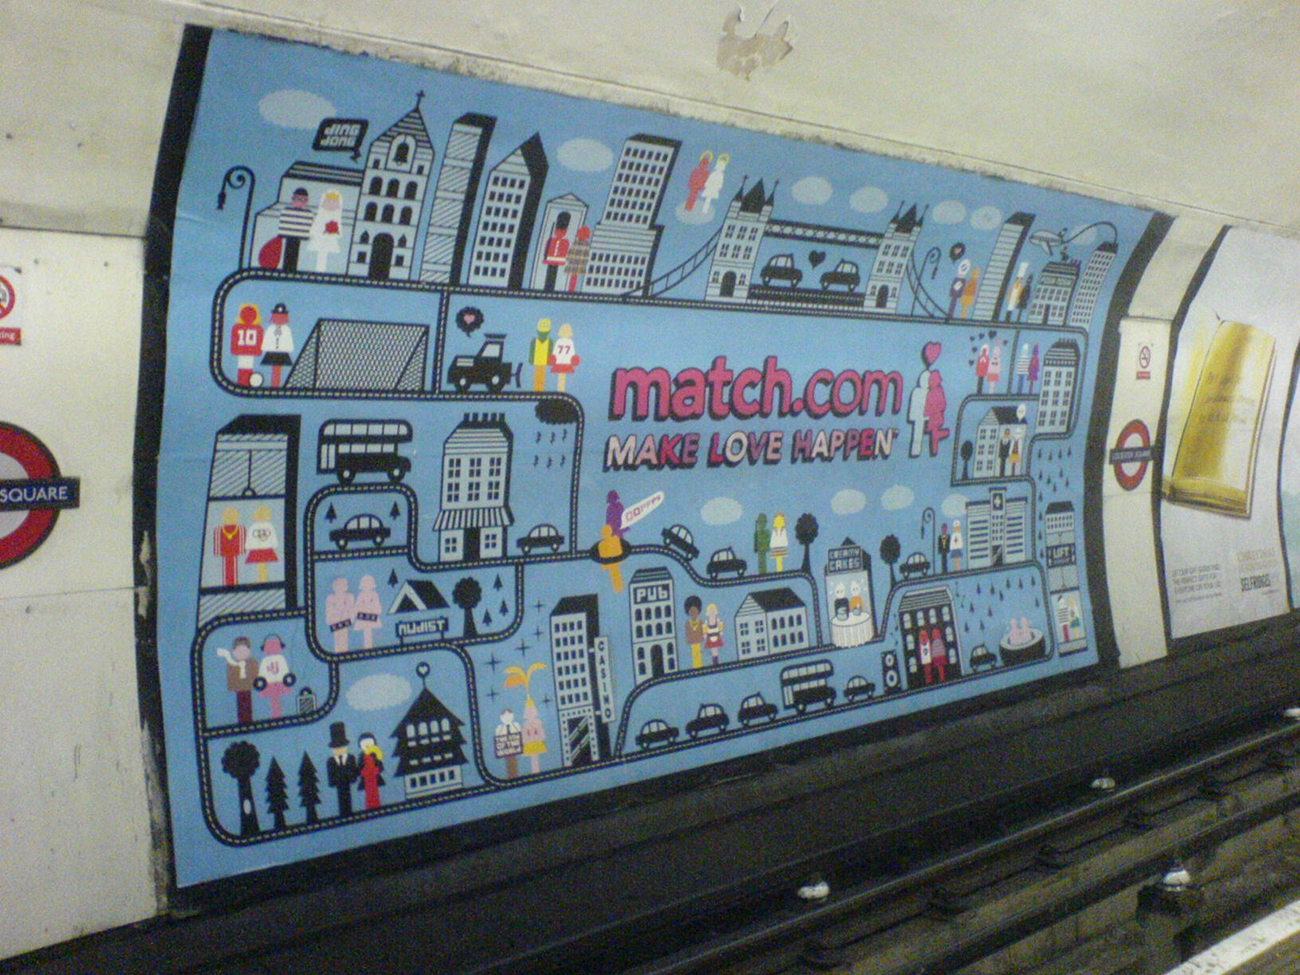 Il y a une grande publicité Match point com peinte sur un mur de métro. Il montre une ville animée remplie de couples. La légende dit : « Fais que l'amour arrive ».